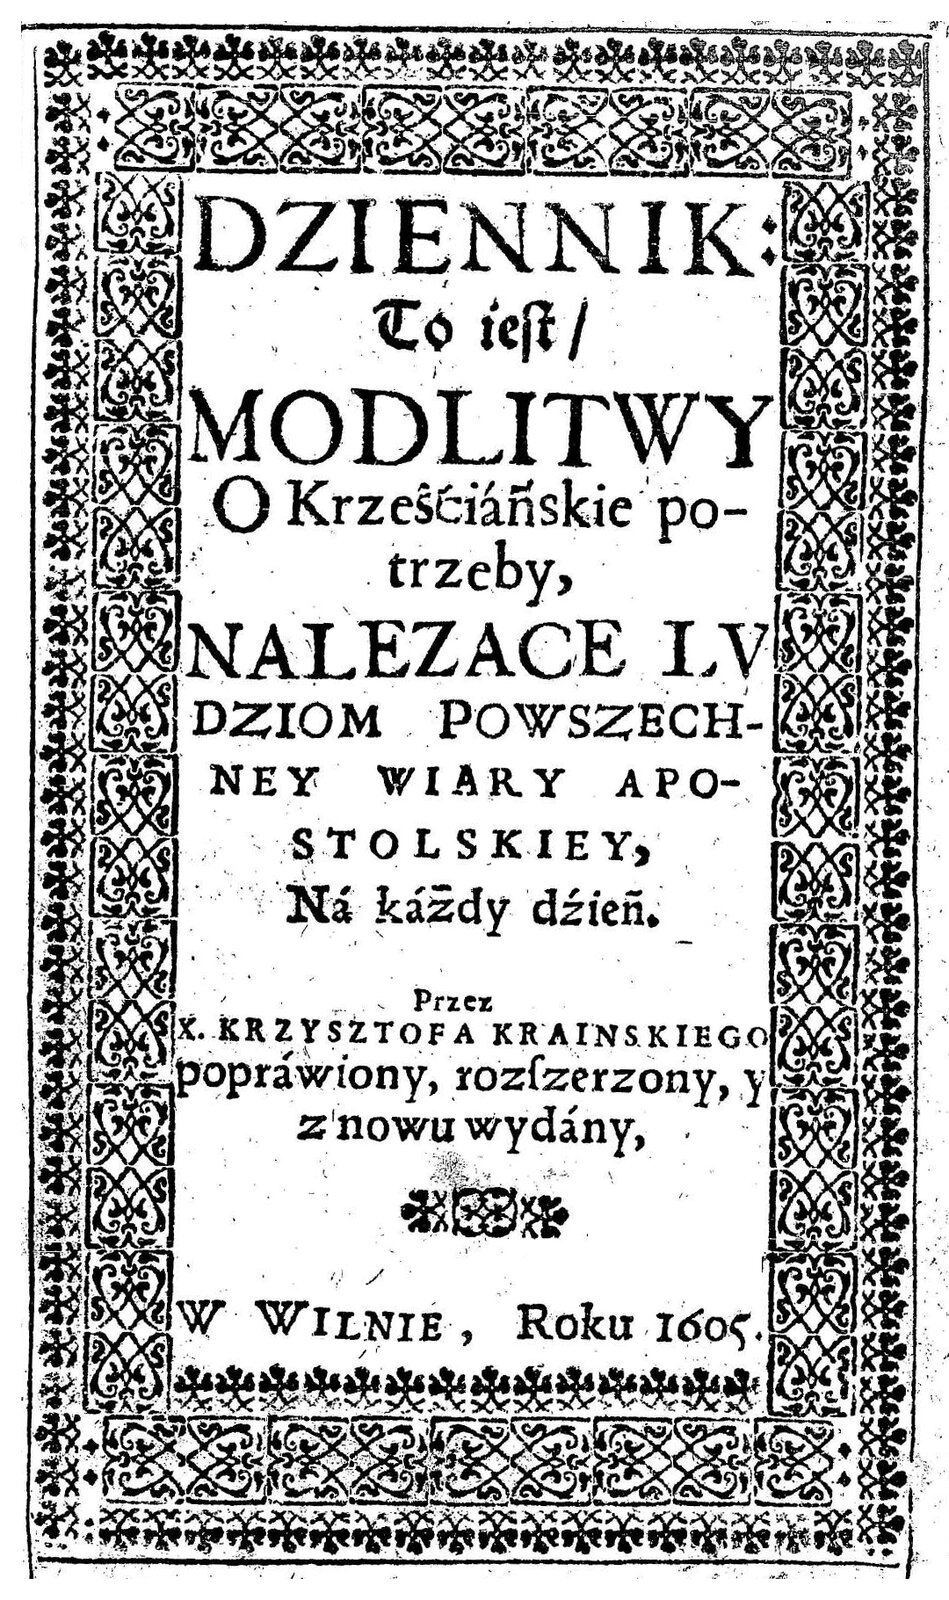 Okładka modlitewnika wydanego w 1605 r.